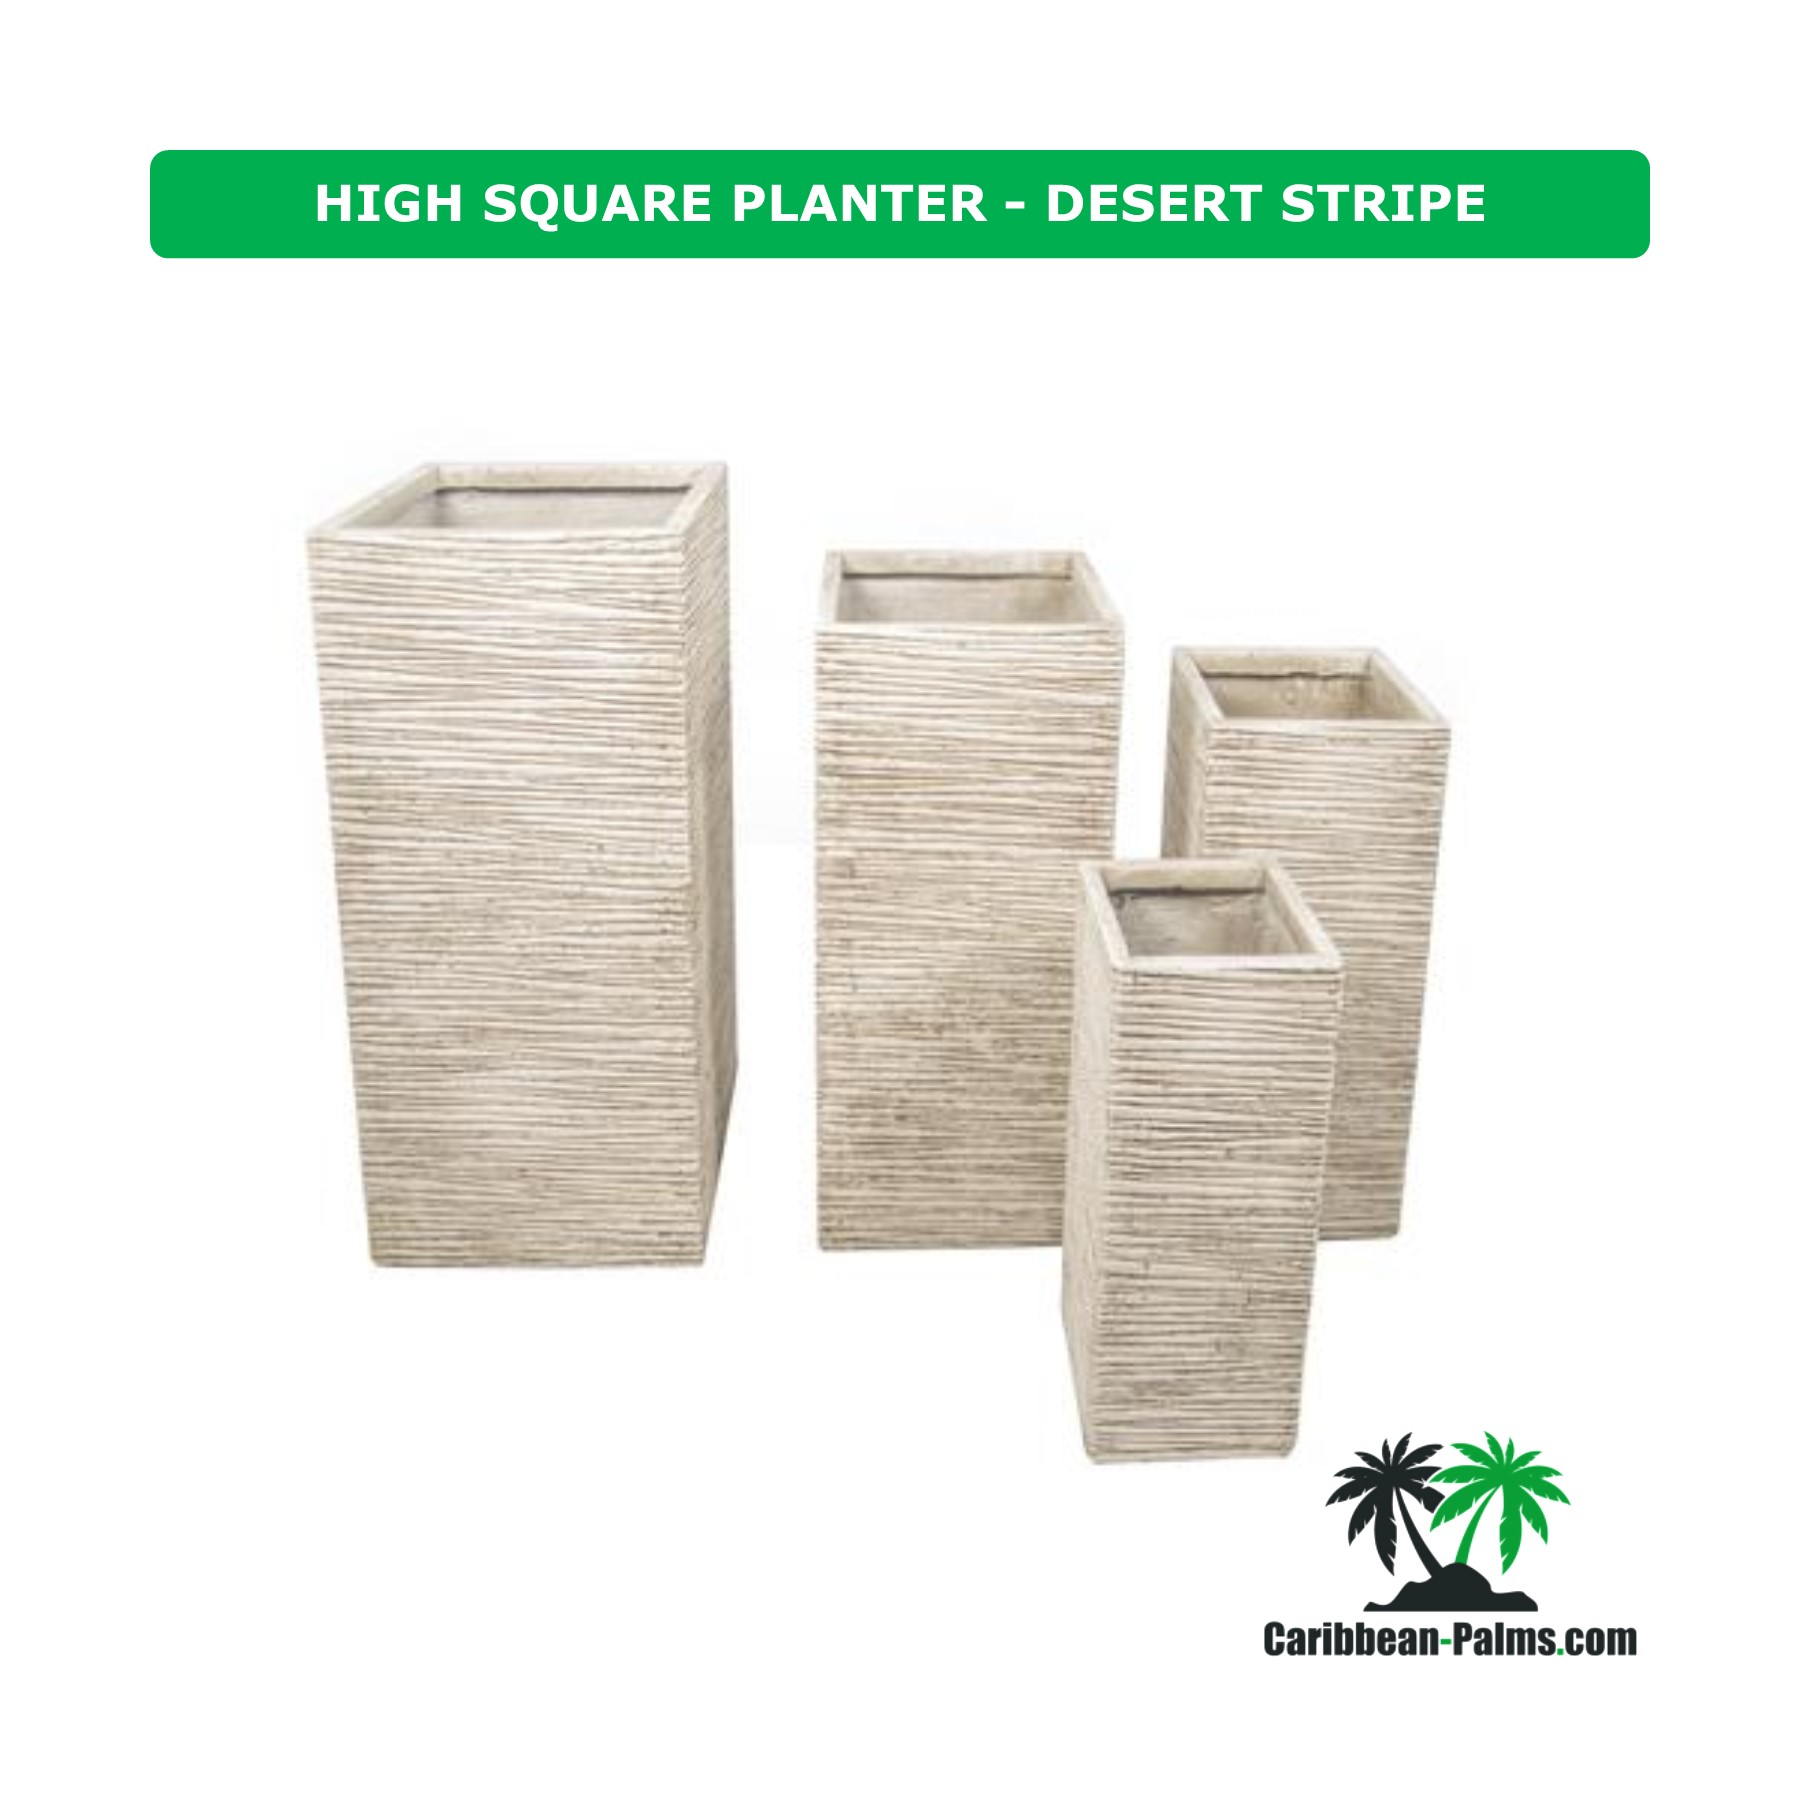 HIGH SQUARE PLANTER DESERT STRIPE